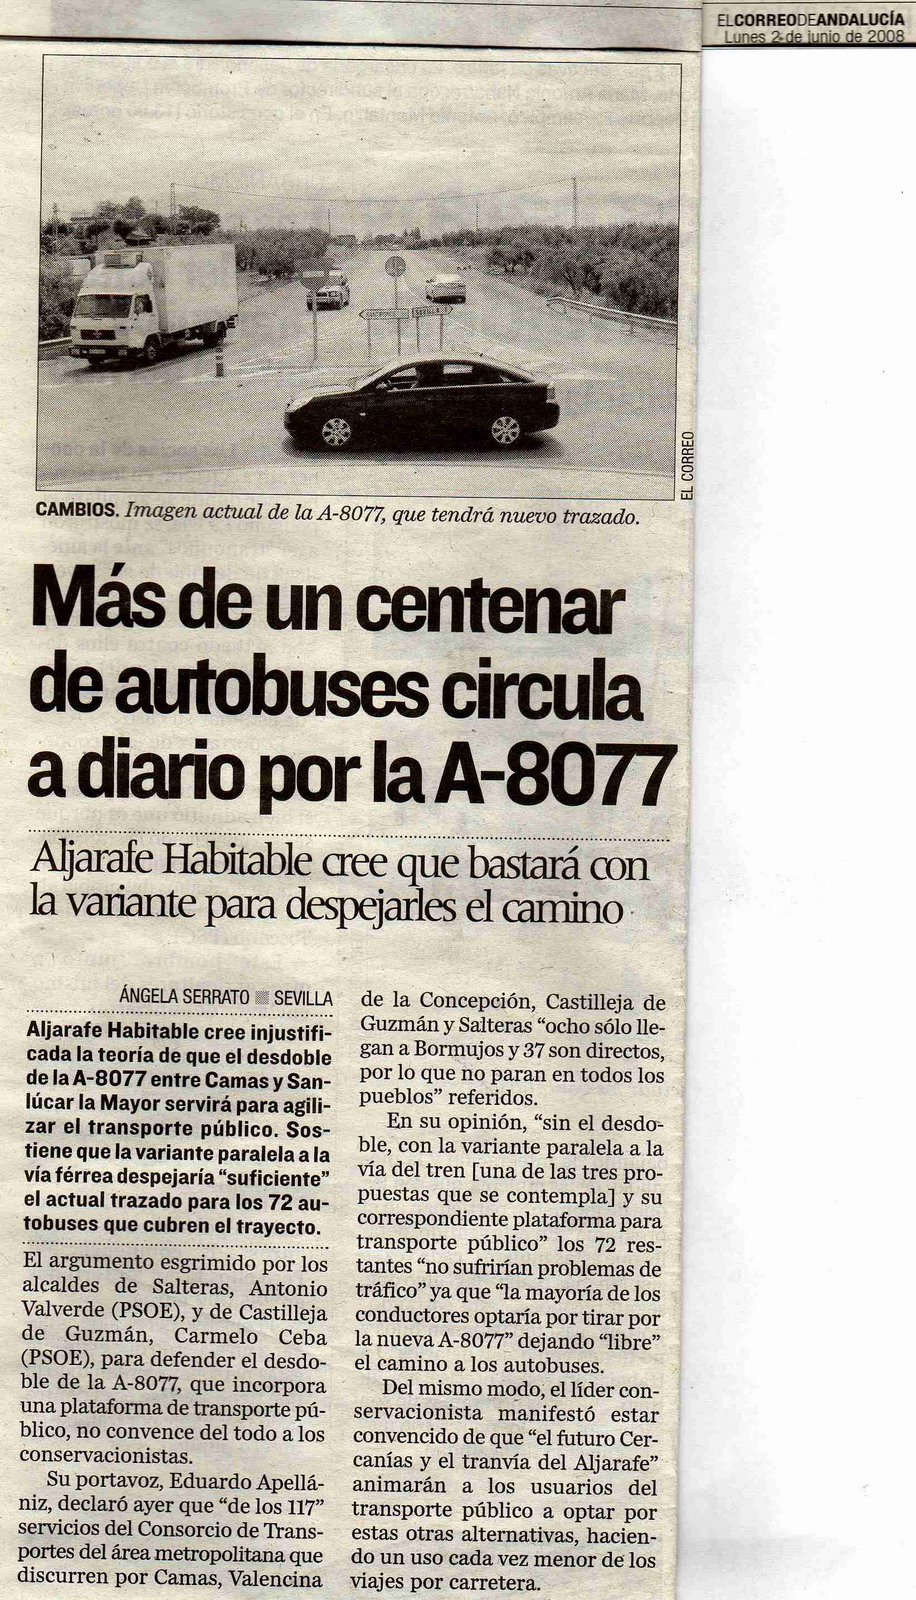 [2008+06+02+CORREO+ANDALUCÃ A+MÃ S+DE+UN+CENTENAR+DE+AUTOBUSES+CIRCULA+A+DIARIO+POR+LA+A-8077.jpg]